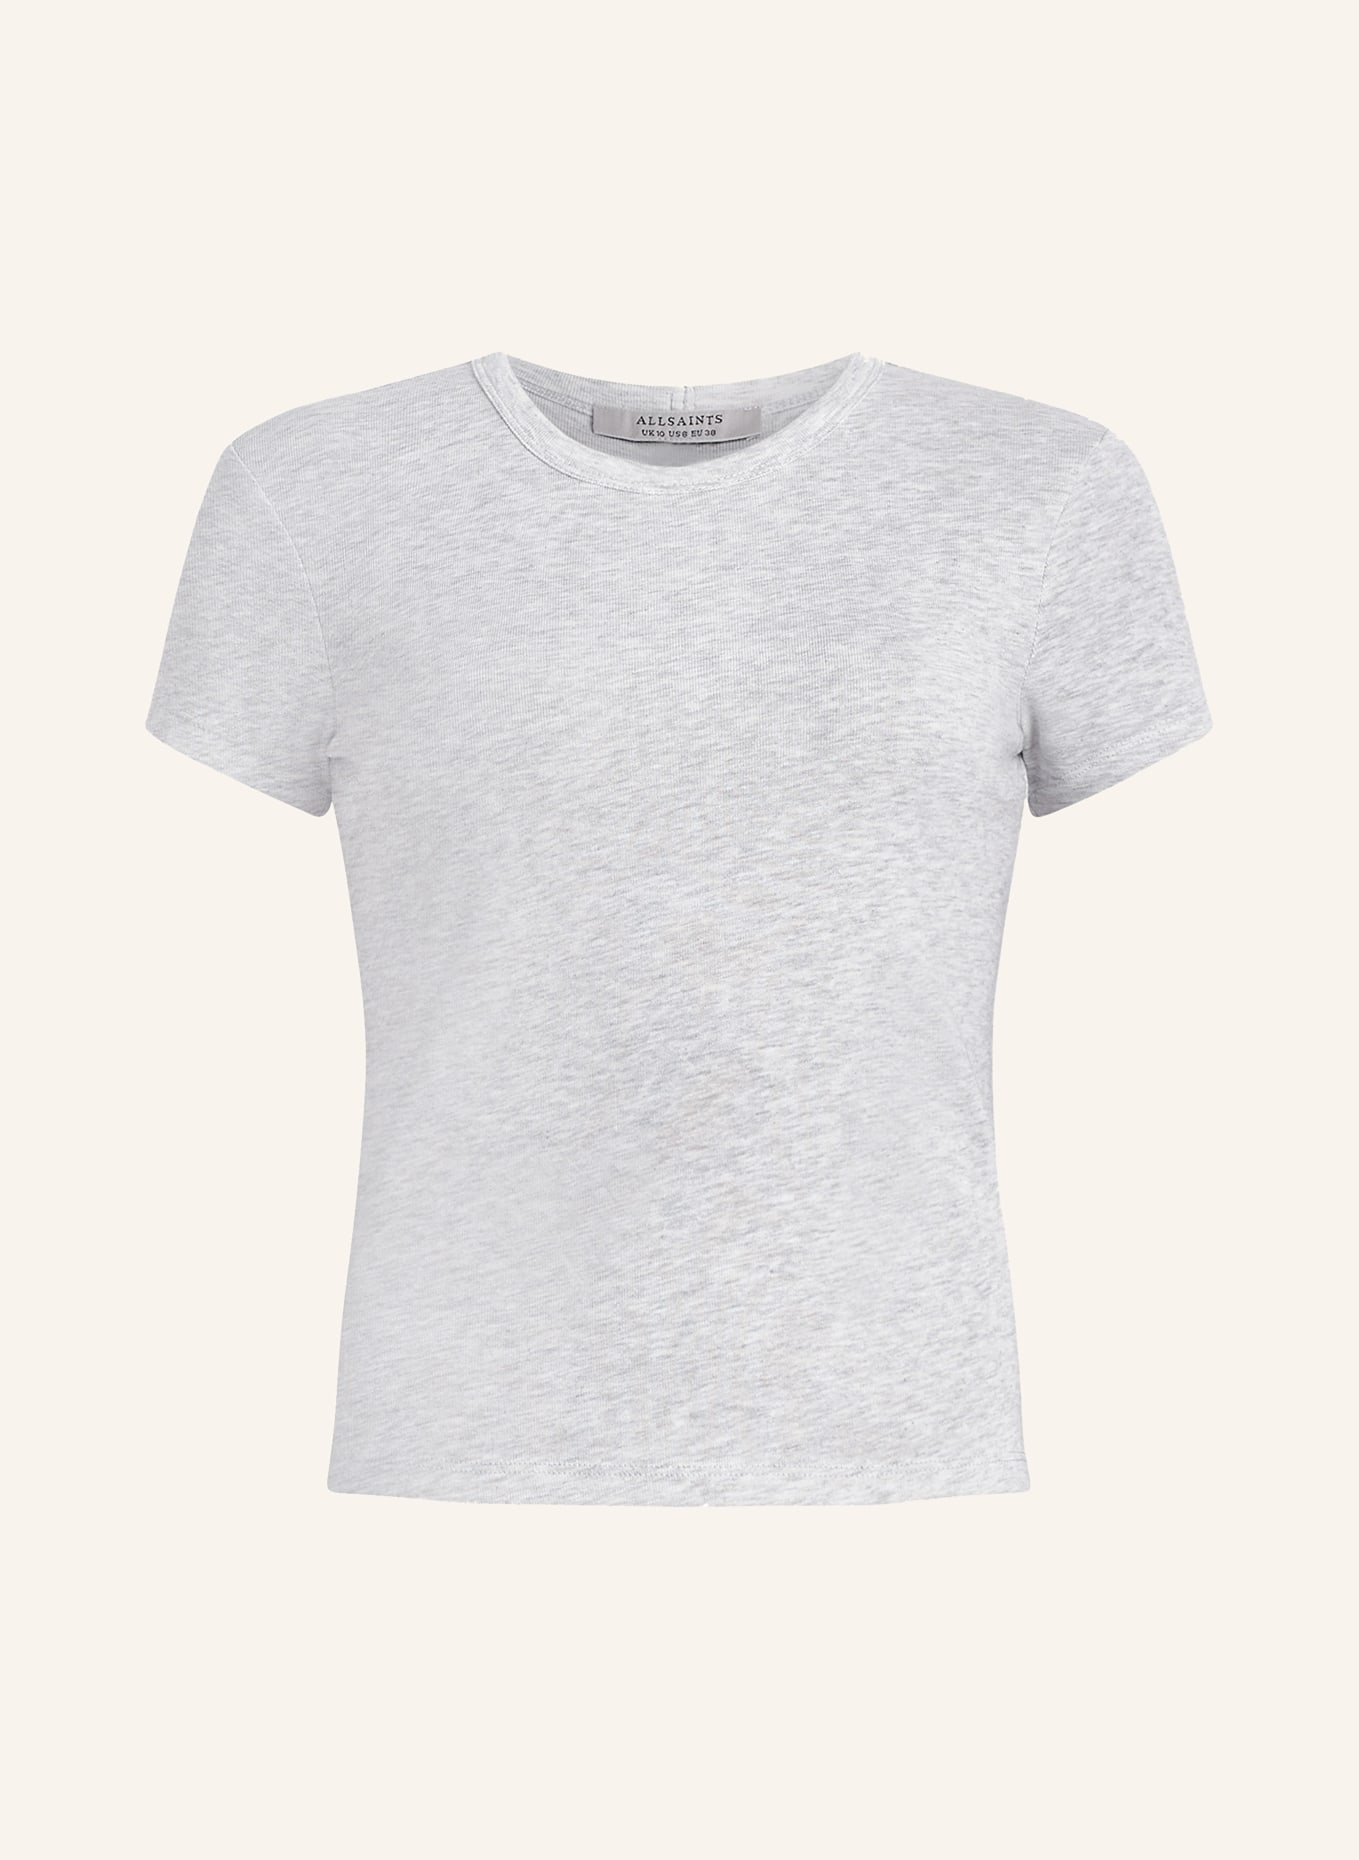 ALLSAINTS T-shirt STEVIE, Color: GRAY (Image 1)